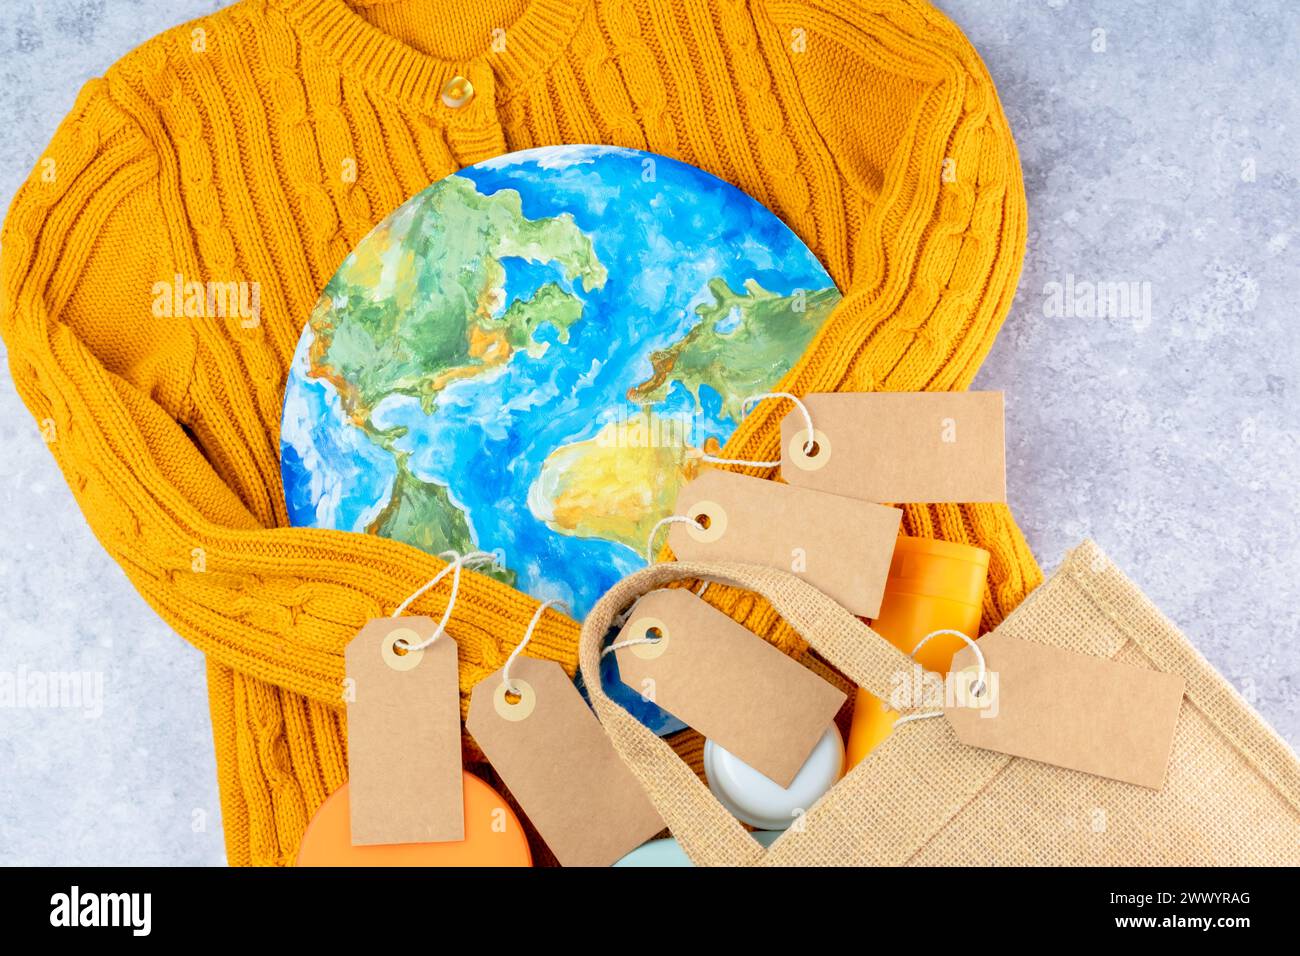 Die Pullover-Ärmel in Gelb halten die Umarmung des Planeten mit einer Öko-Tasche und Etiketten. Verantwortungsbewusster Konsum. Kreatives Konzept weniger kaufen Stockfoto